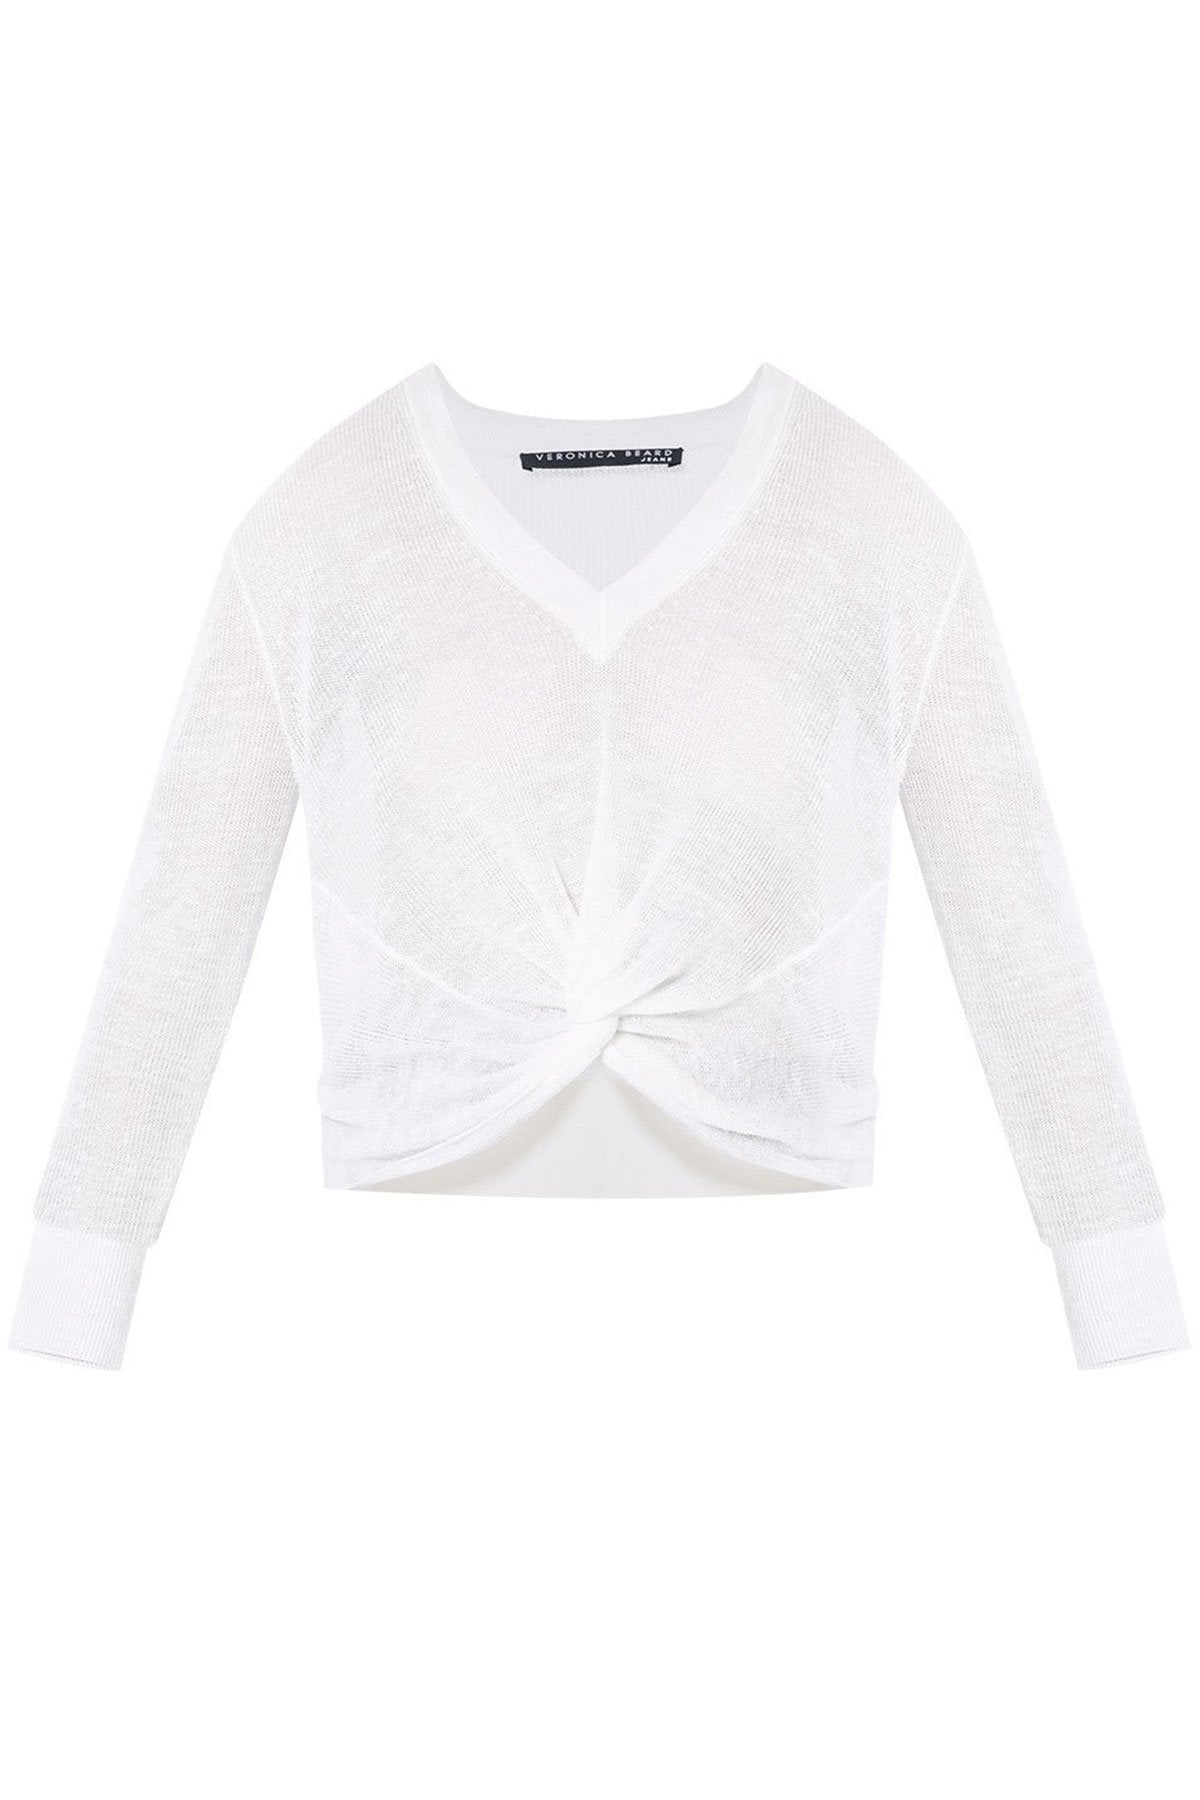 Soren Sweater Ivory - shop-olivia.com